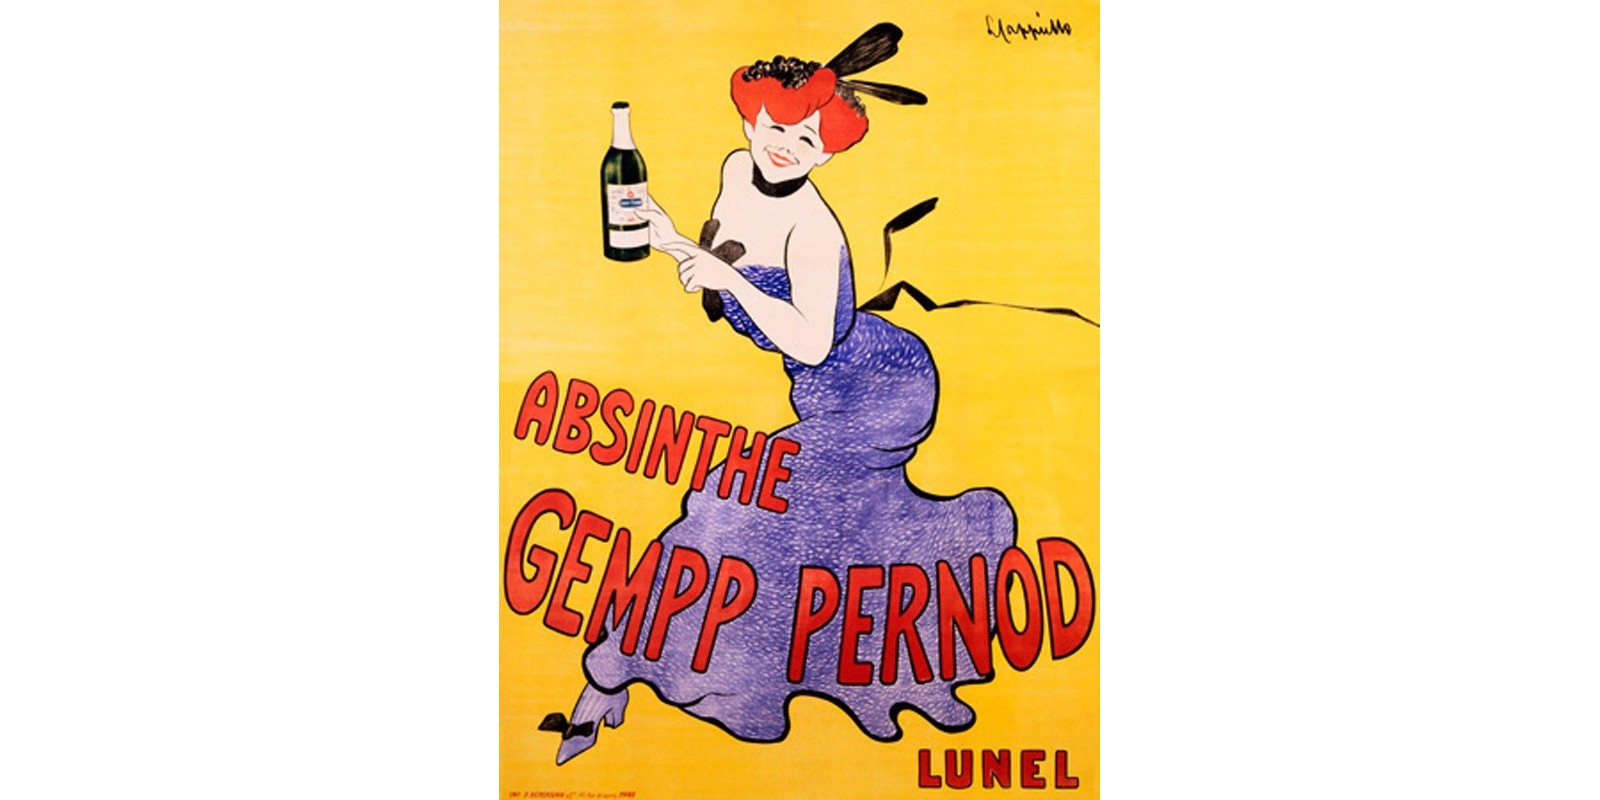 Leonetto Cappiello - Absinthe Gempp Pernod, 1903